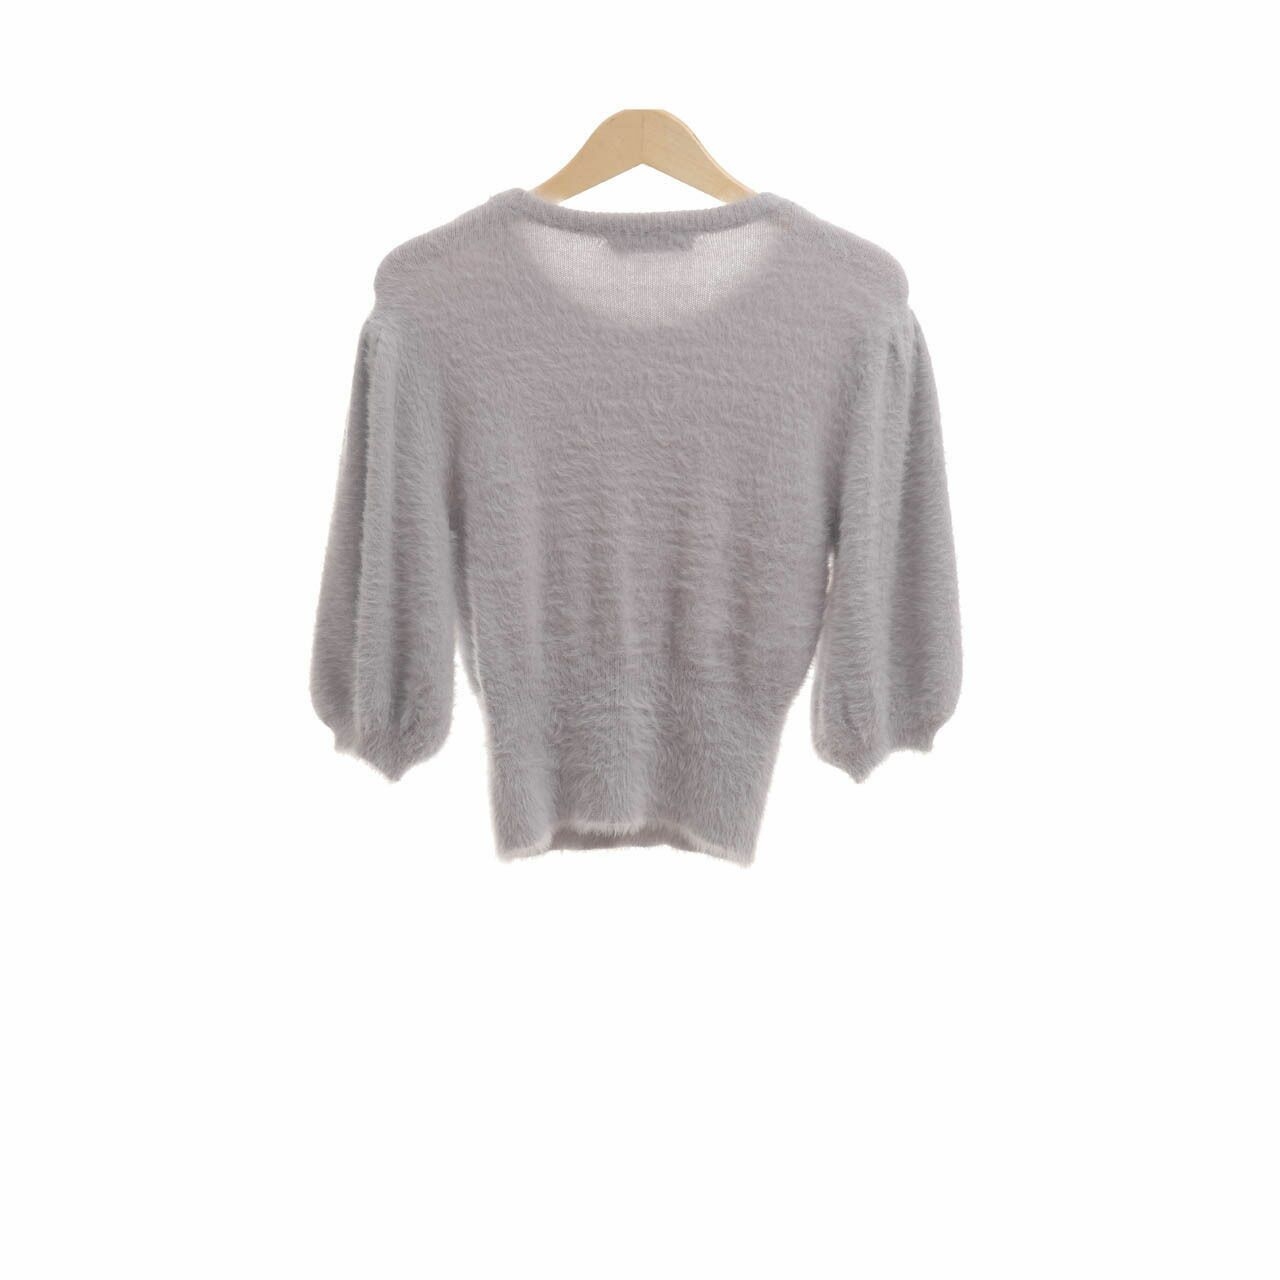 Zara Grey Sweater